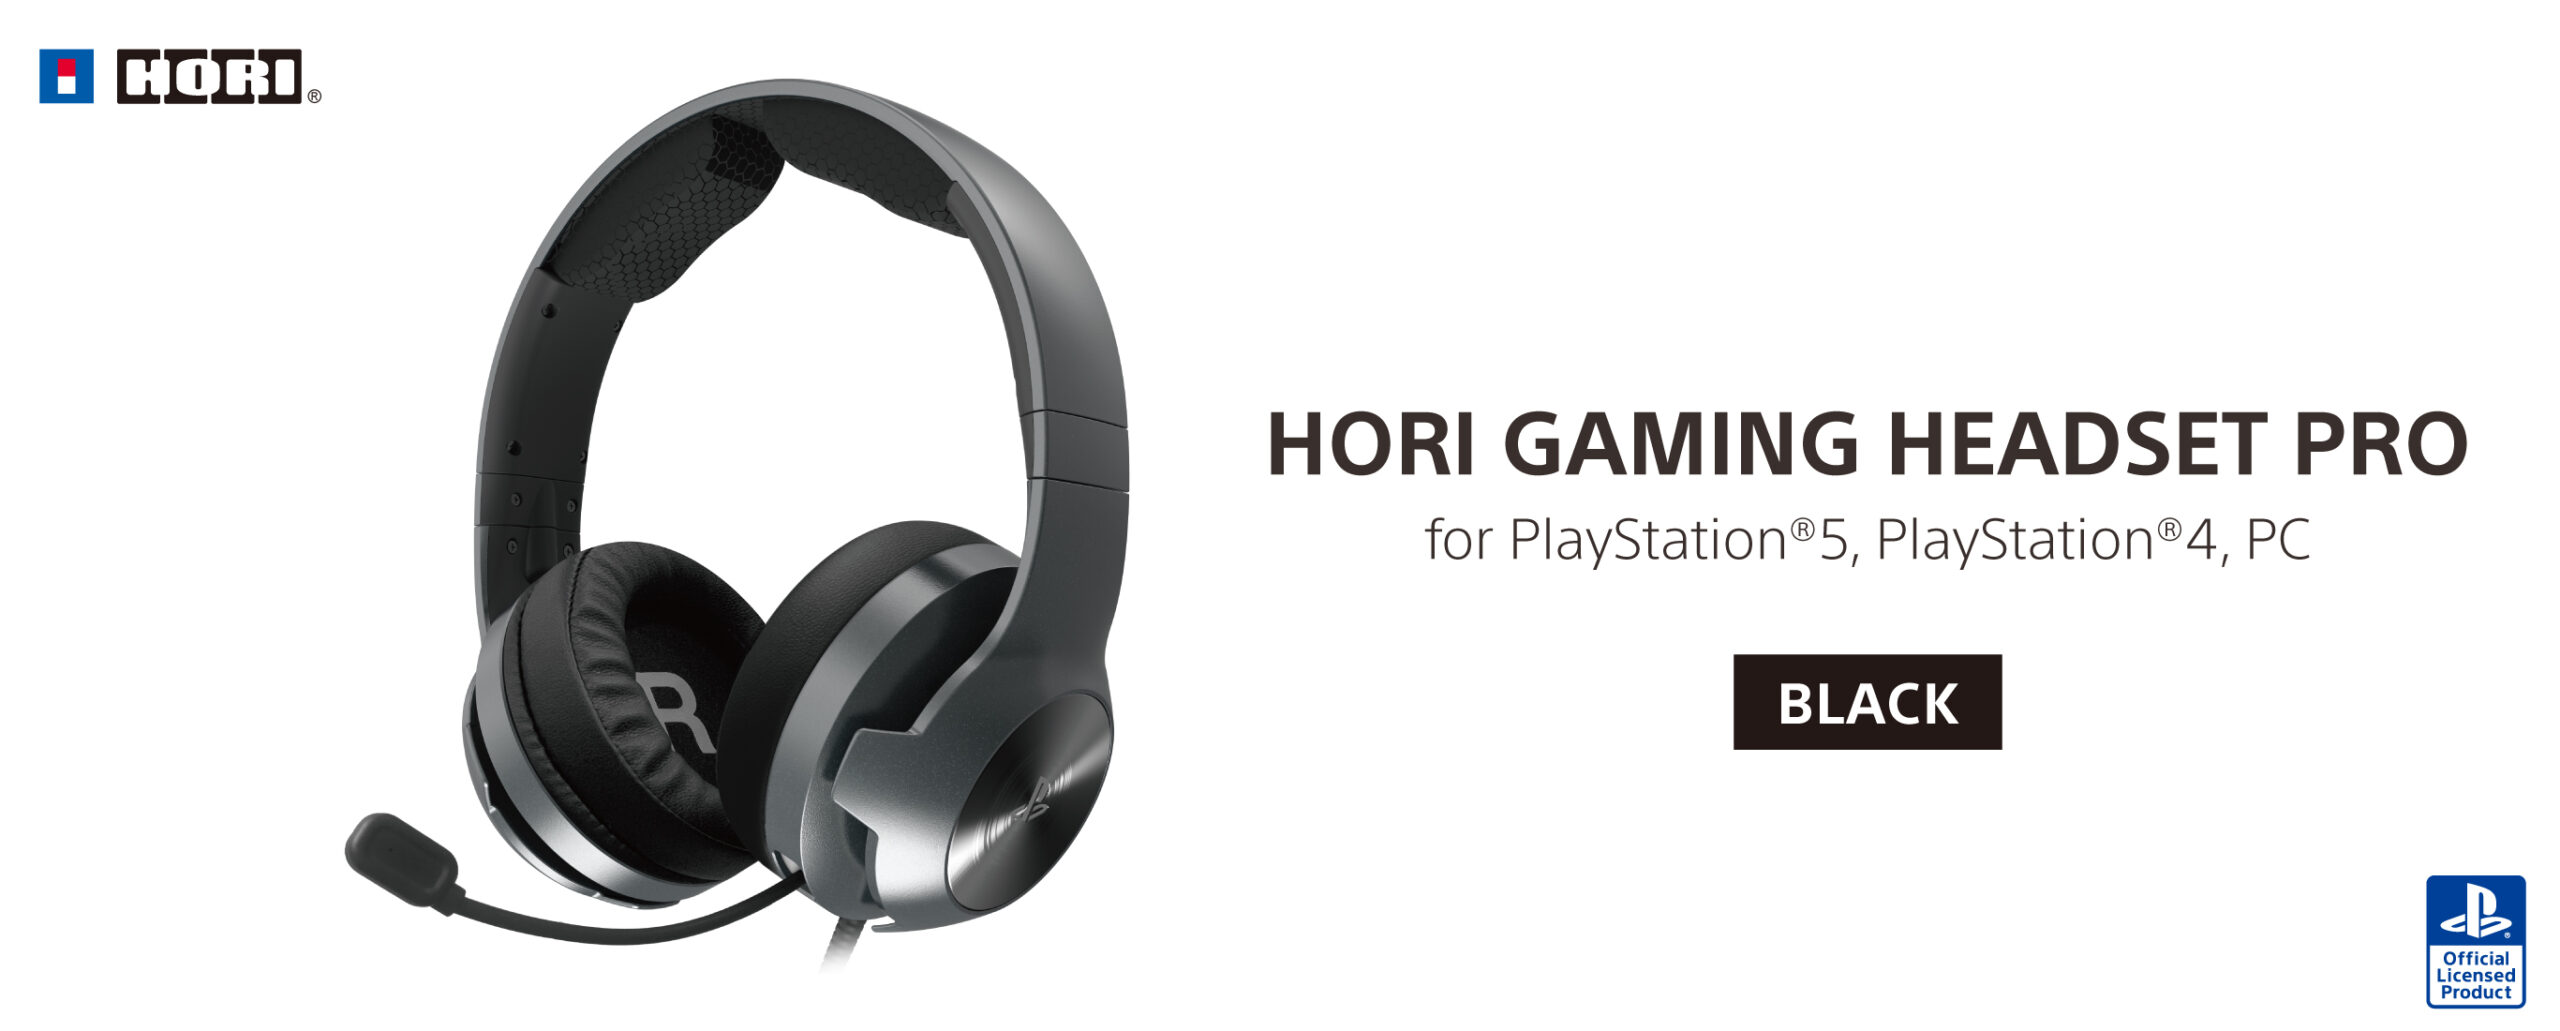 株式会社 HORI ホリ ゲーミングヘッドセット プロ for PlayStation®5, PlayStation®4, PC ブラック